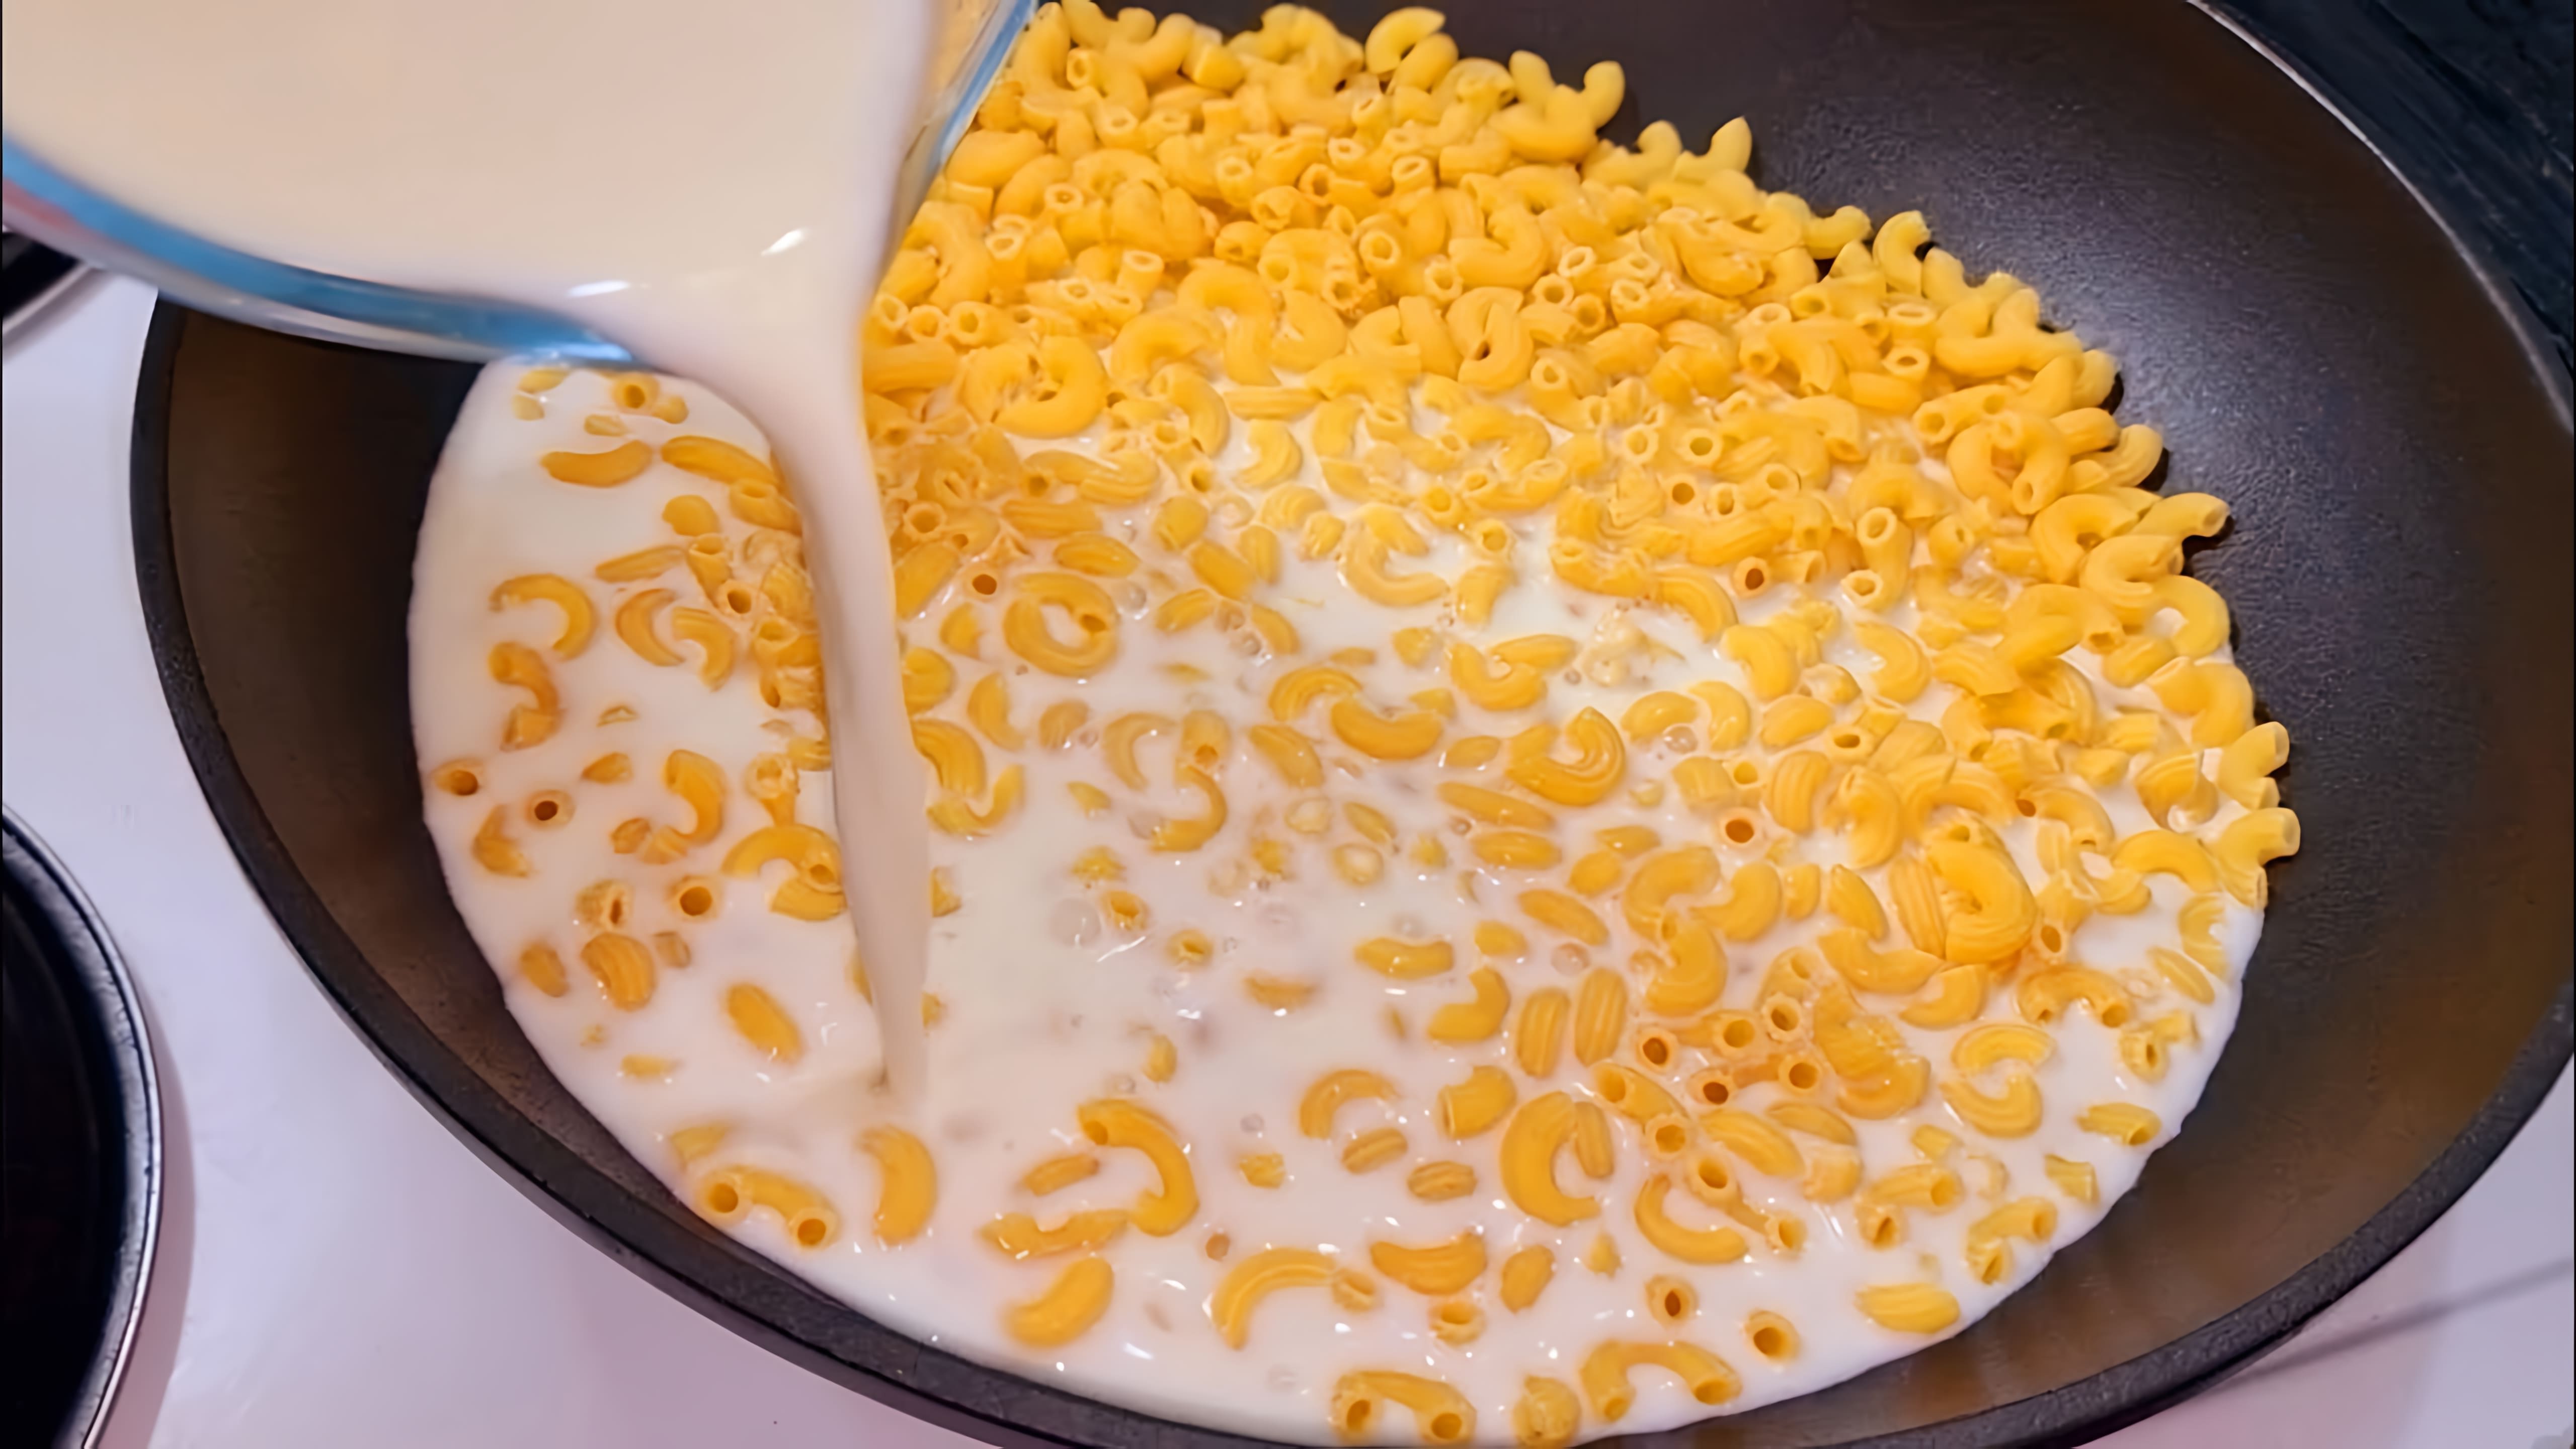 В данном видео демонстрируется процесс приготовления макарон с молоком